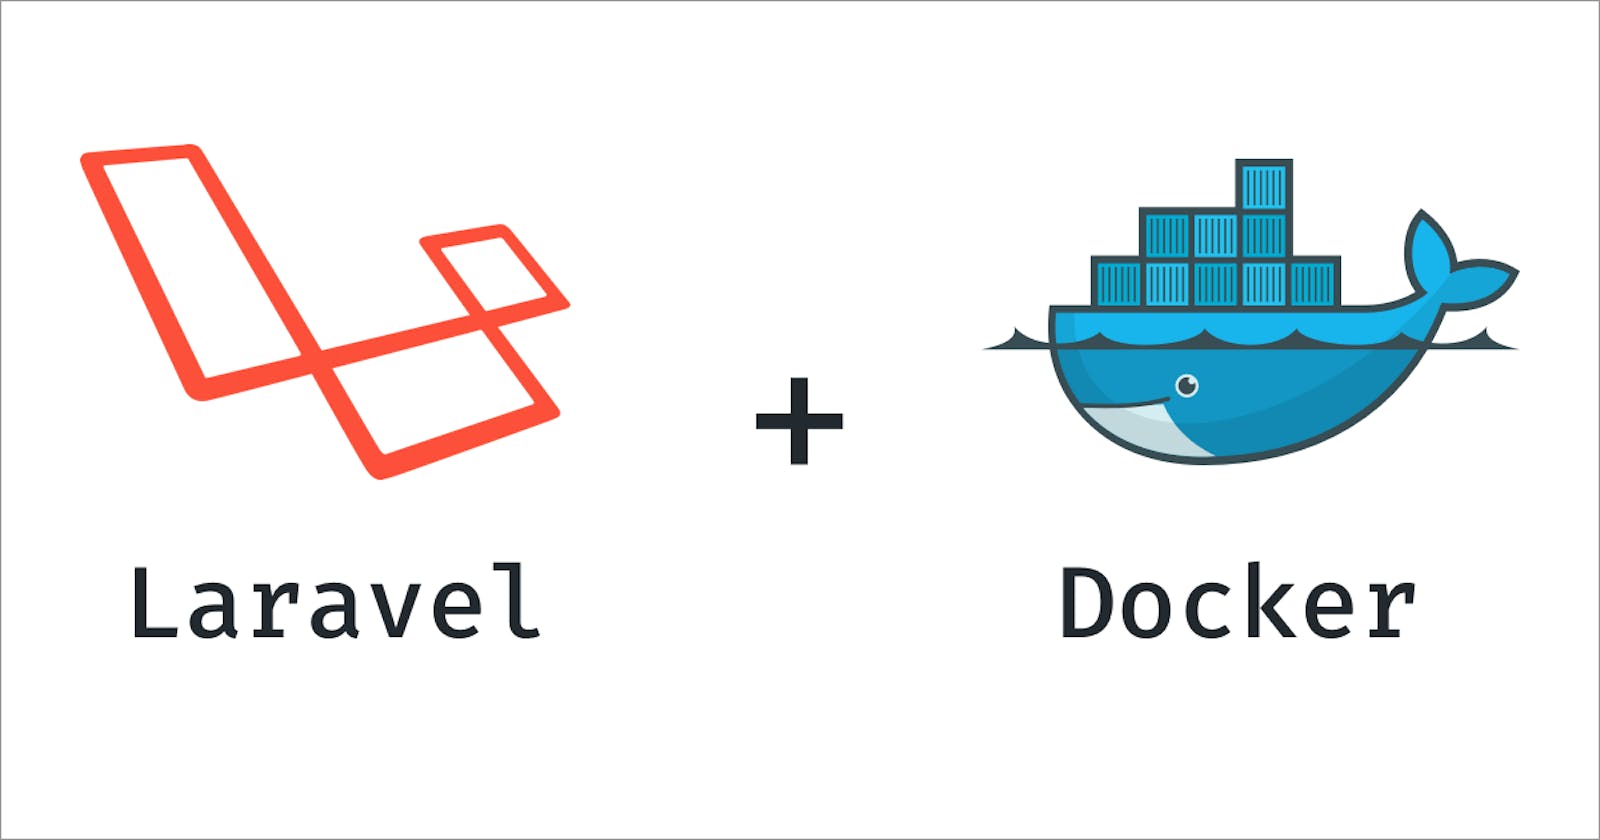 Dockerize your Laravel project with Laradock